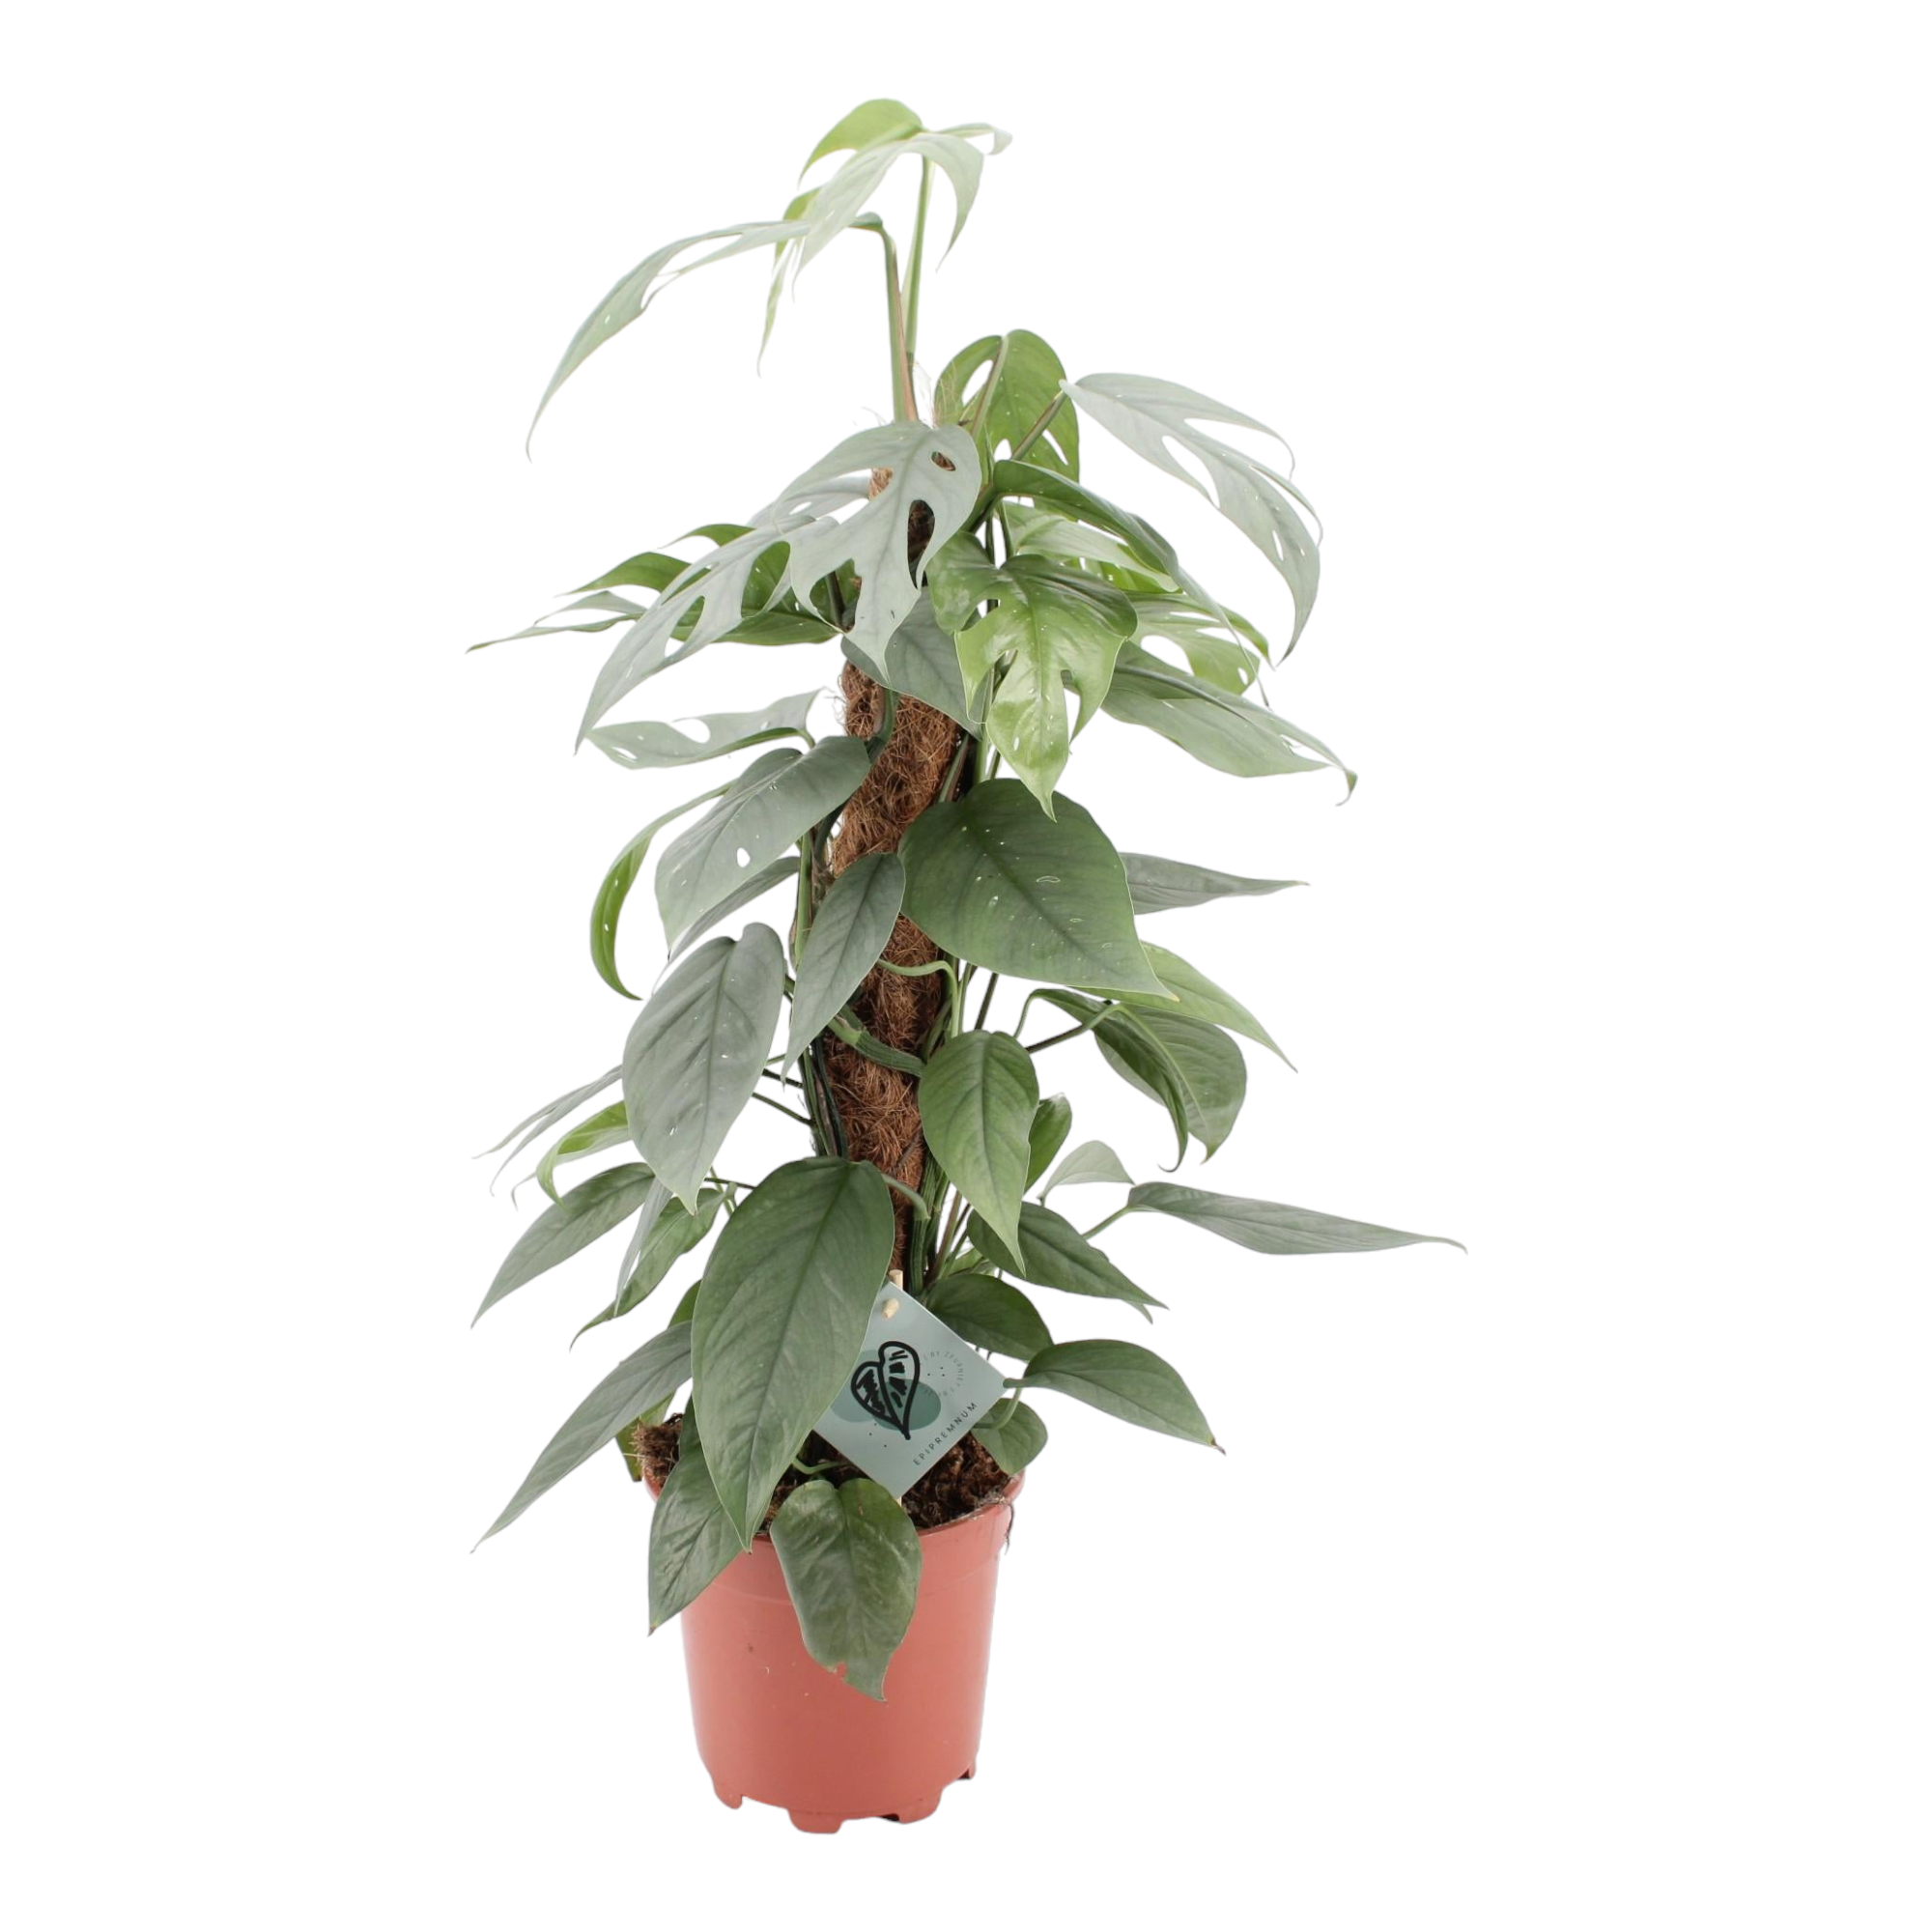 Achetez votre Cactus Unique, Plante D'intérieur Facile d'Entretien – La  Green Touch